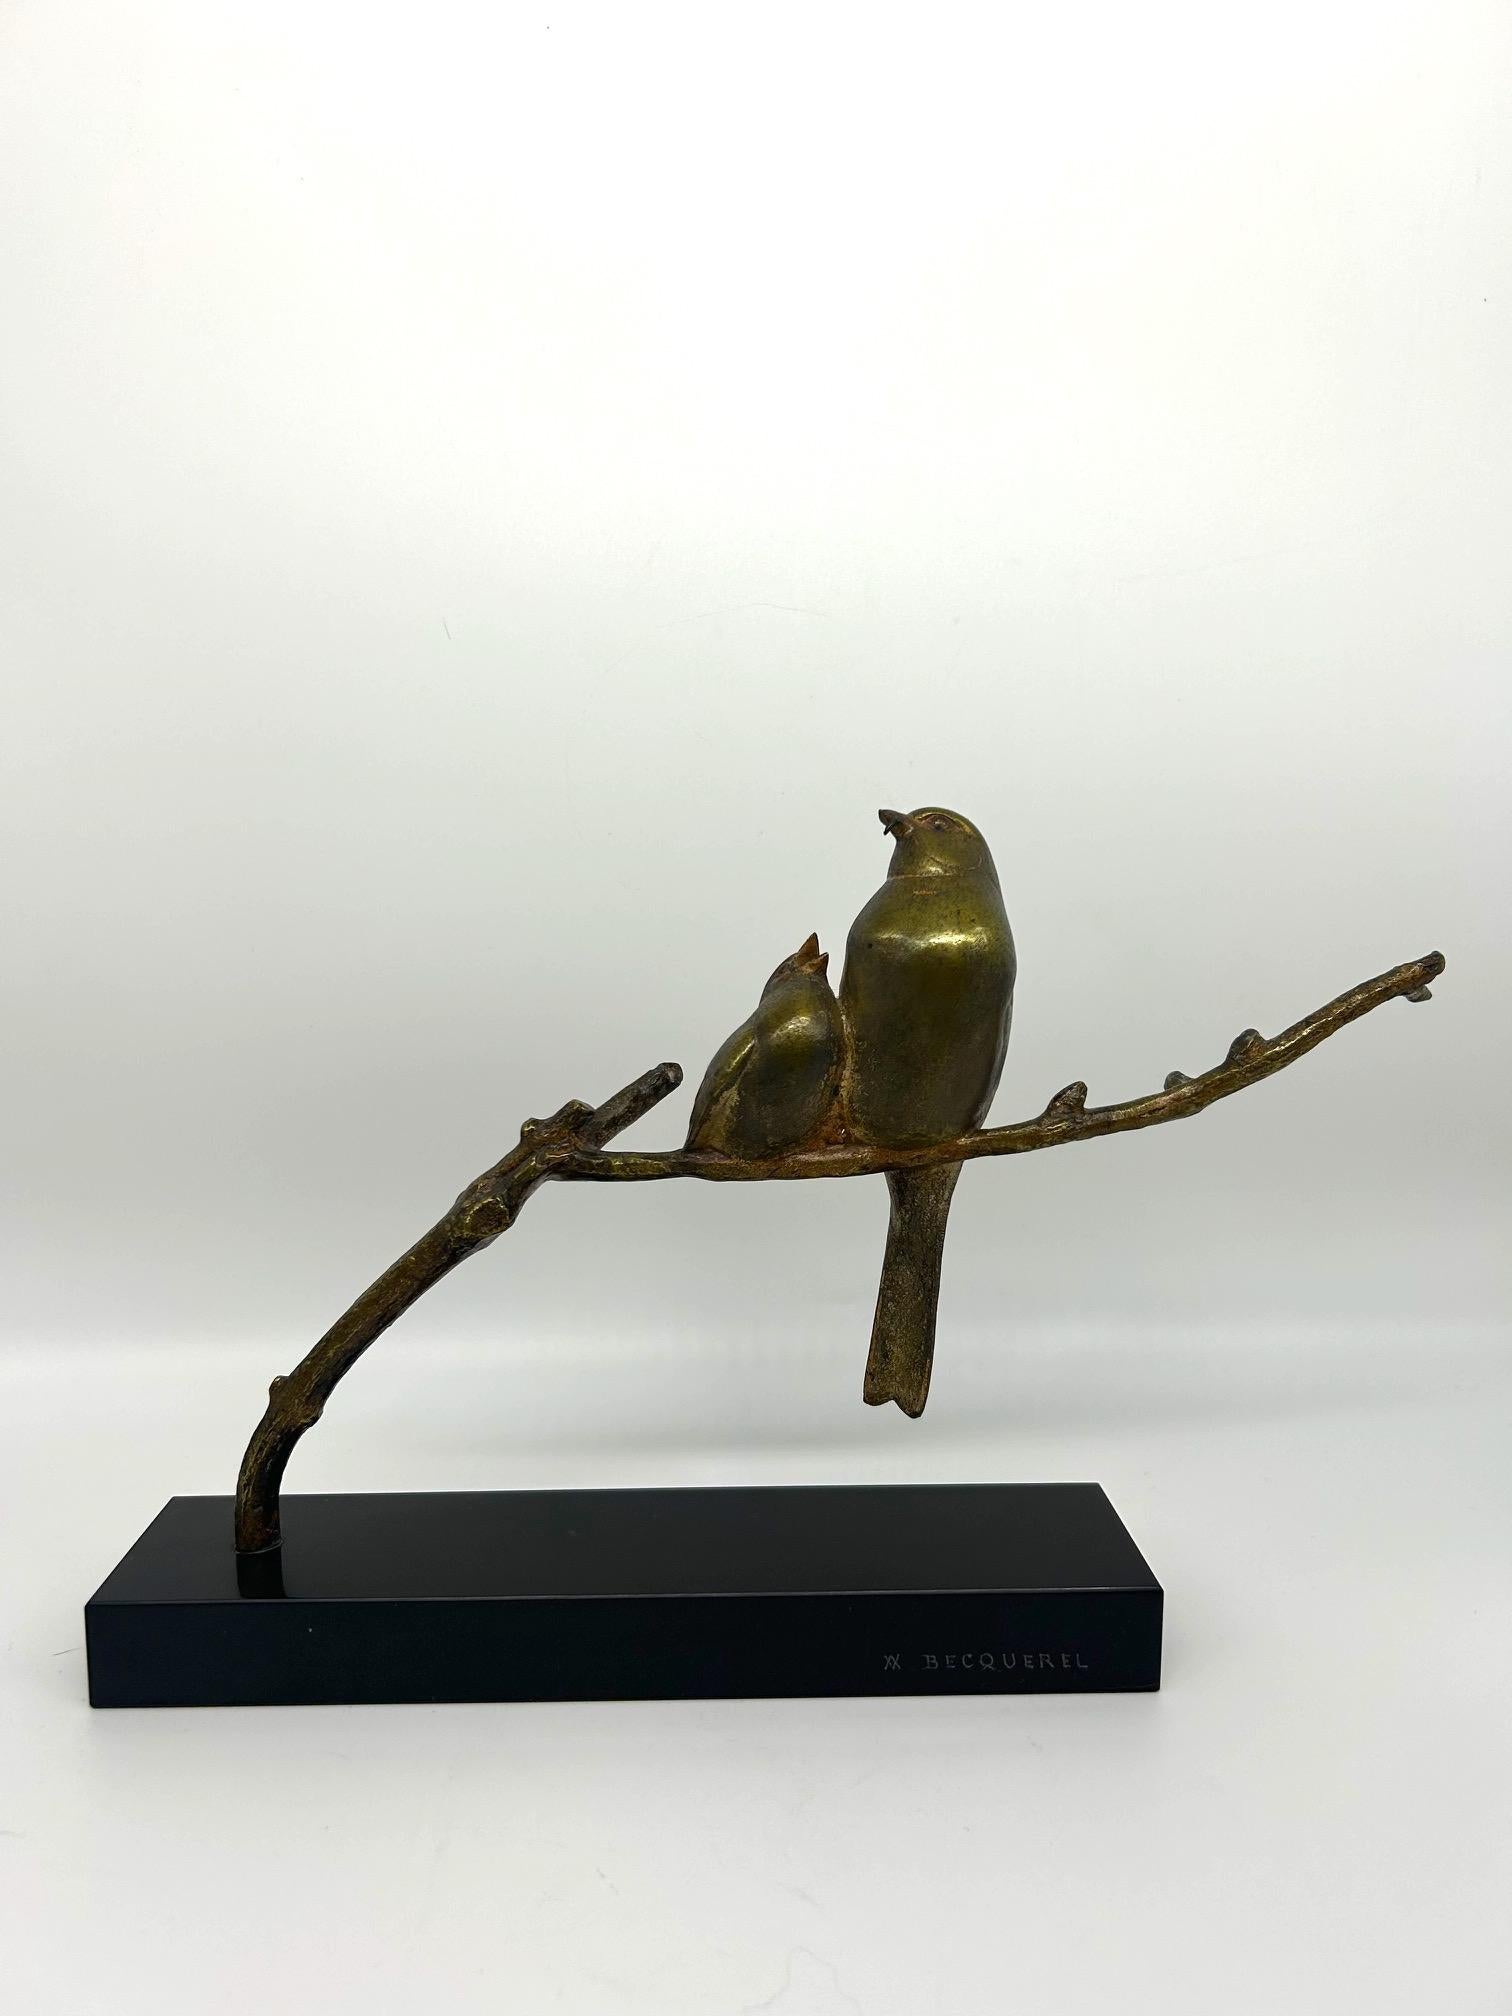 Art-Deco-Skulptur von Vögeln auf einem Ast mit patentierter Bronze auf einem schwarzen Marmorsockel 
signiert von dem Künstler André Vincent Becquerel 